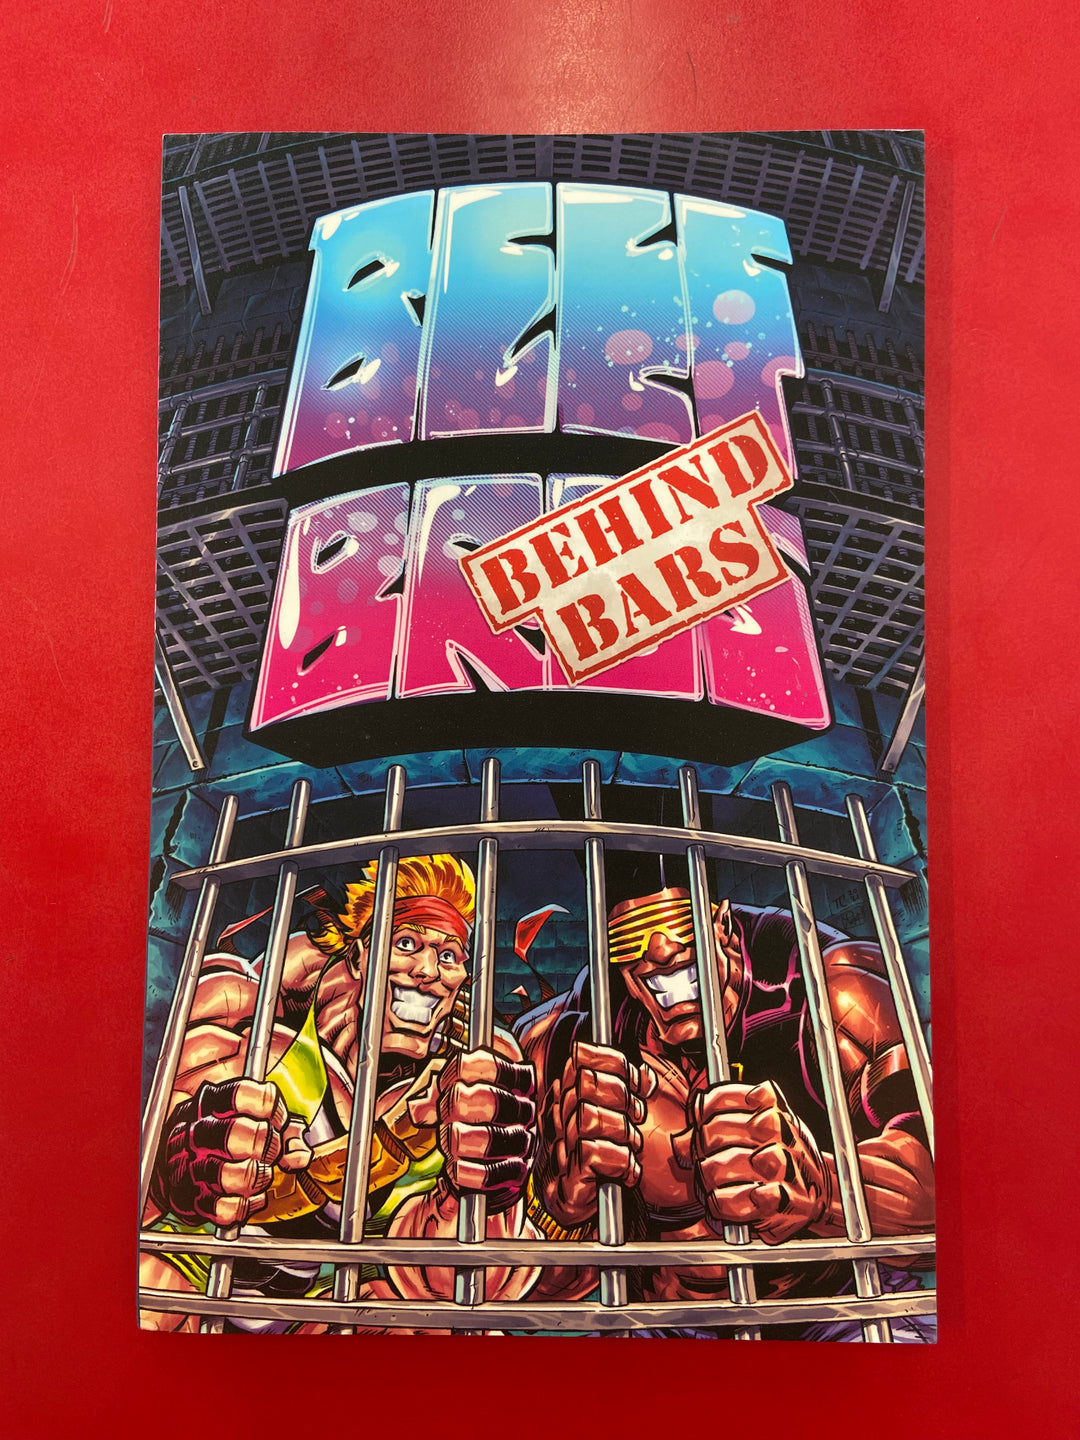 Beef Bros: Behind Bars